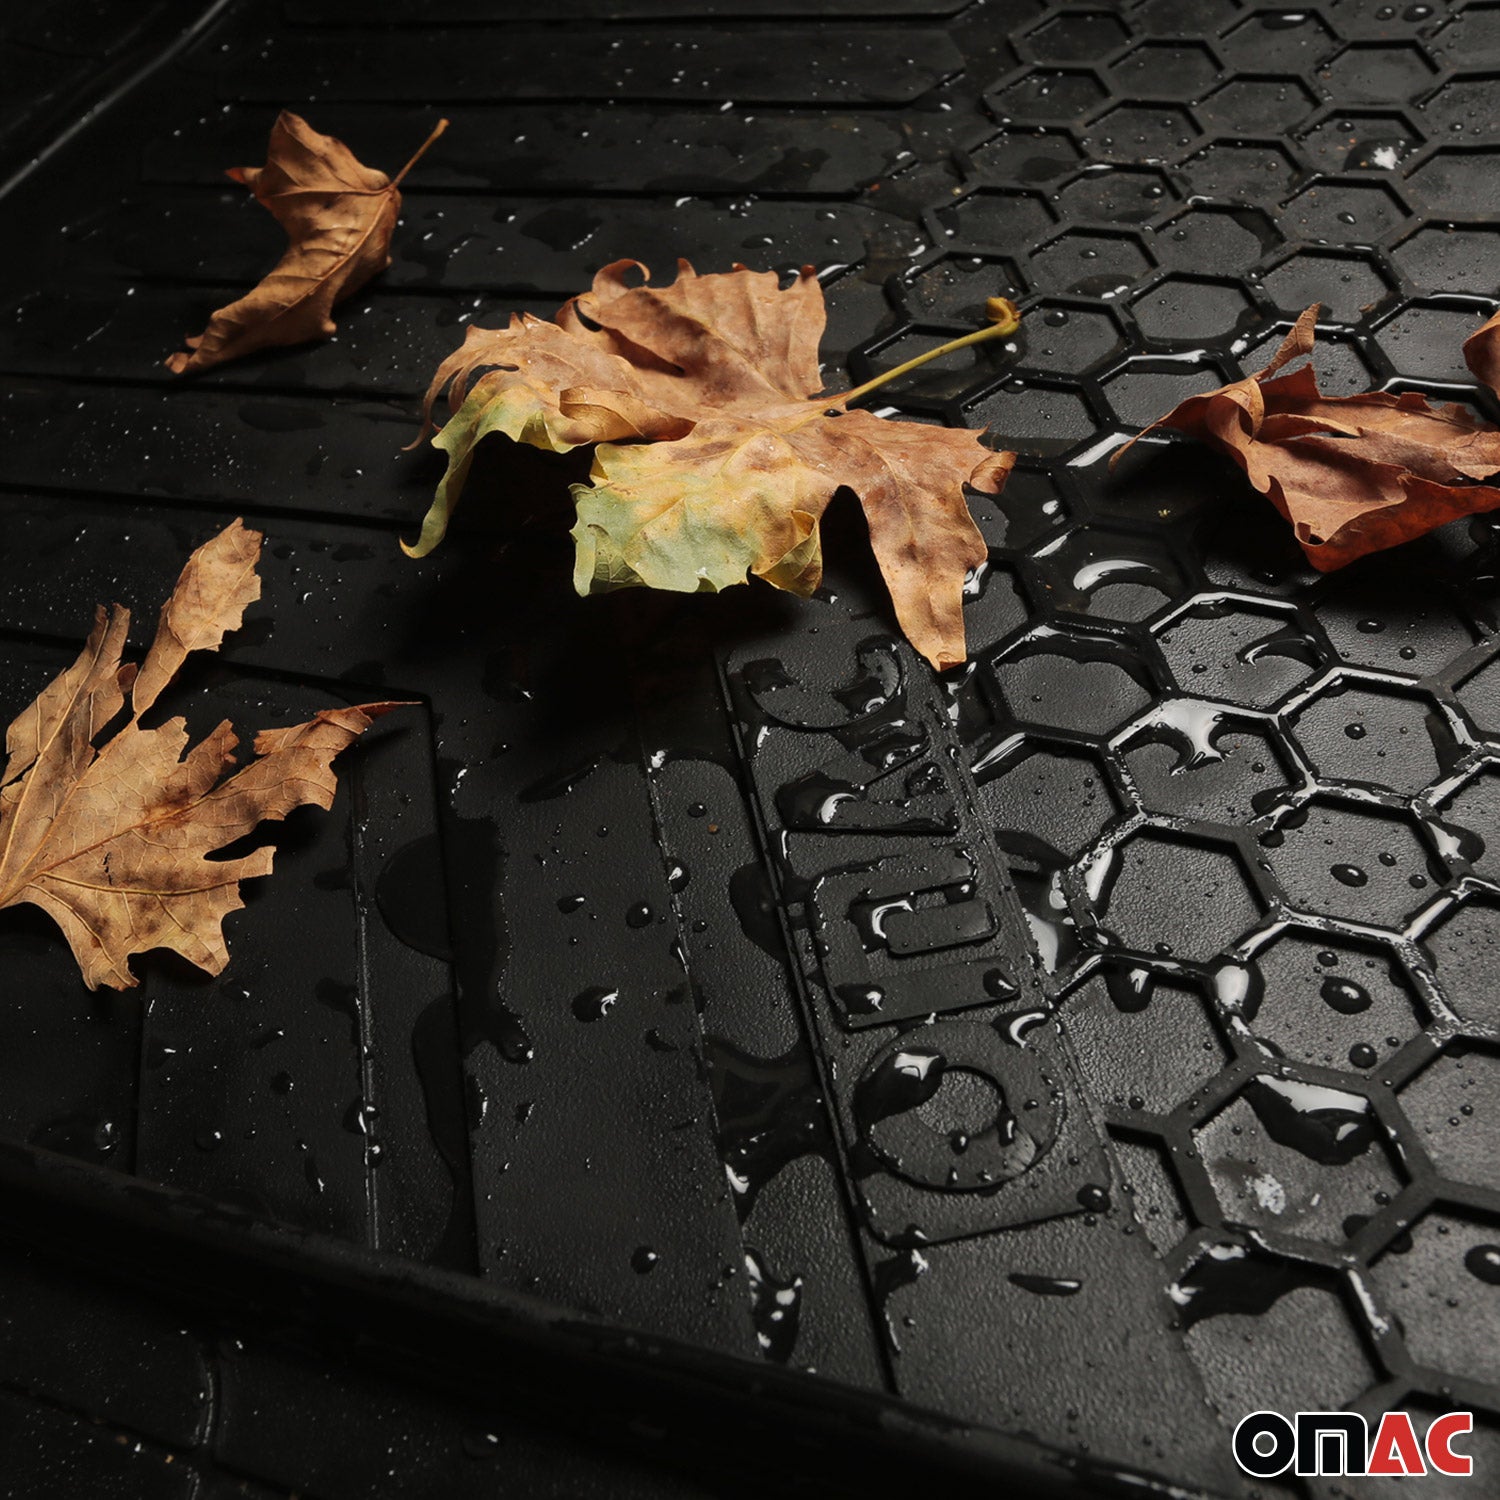 Fußmatte Gummimatten für Audi Q3 Allwetter Automatten Hoher Rand Antirutsch